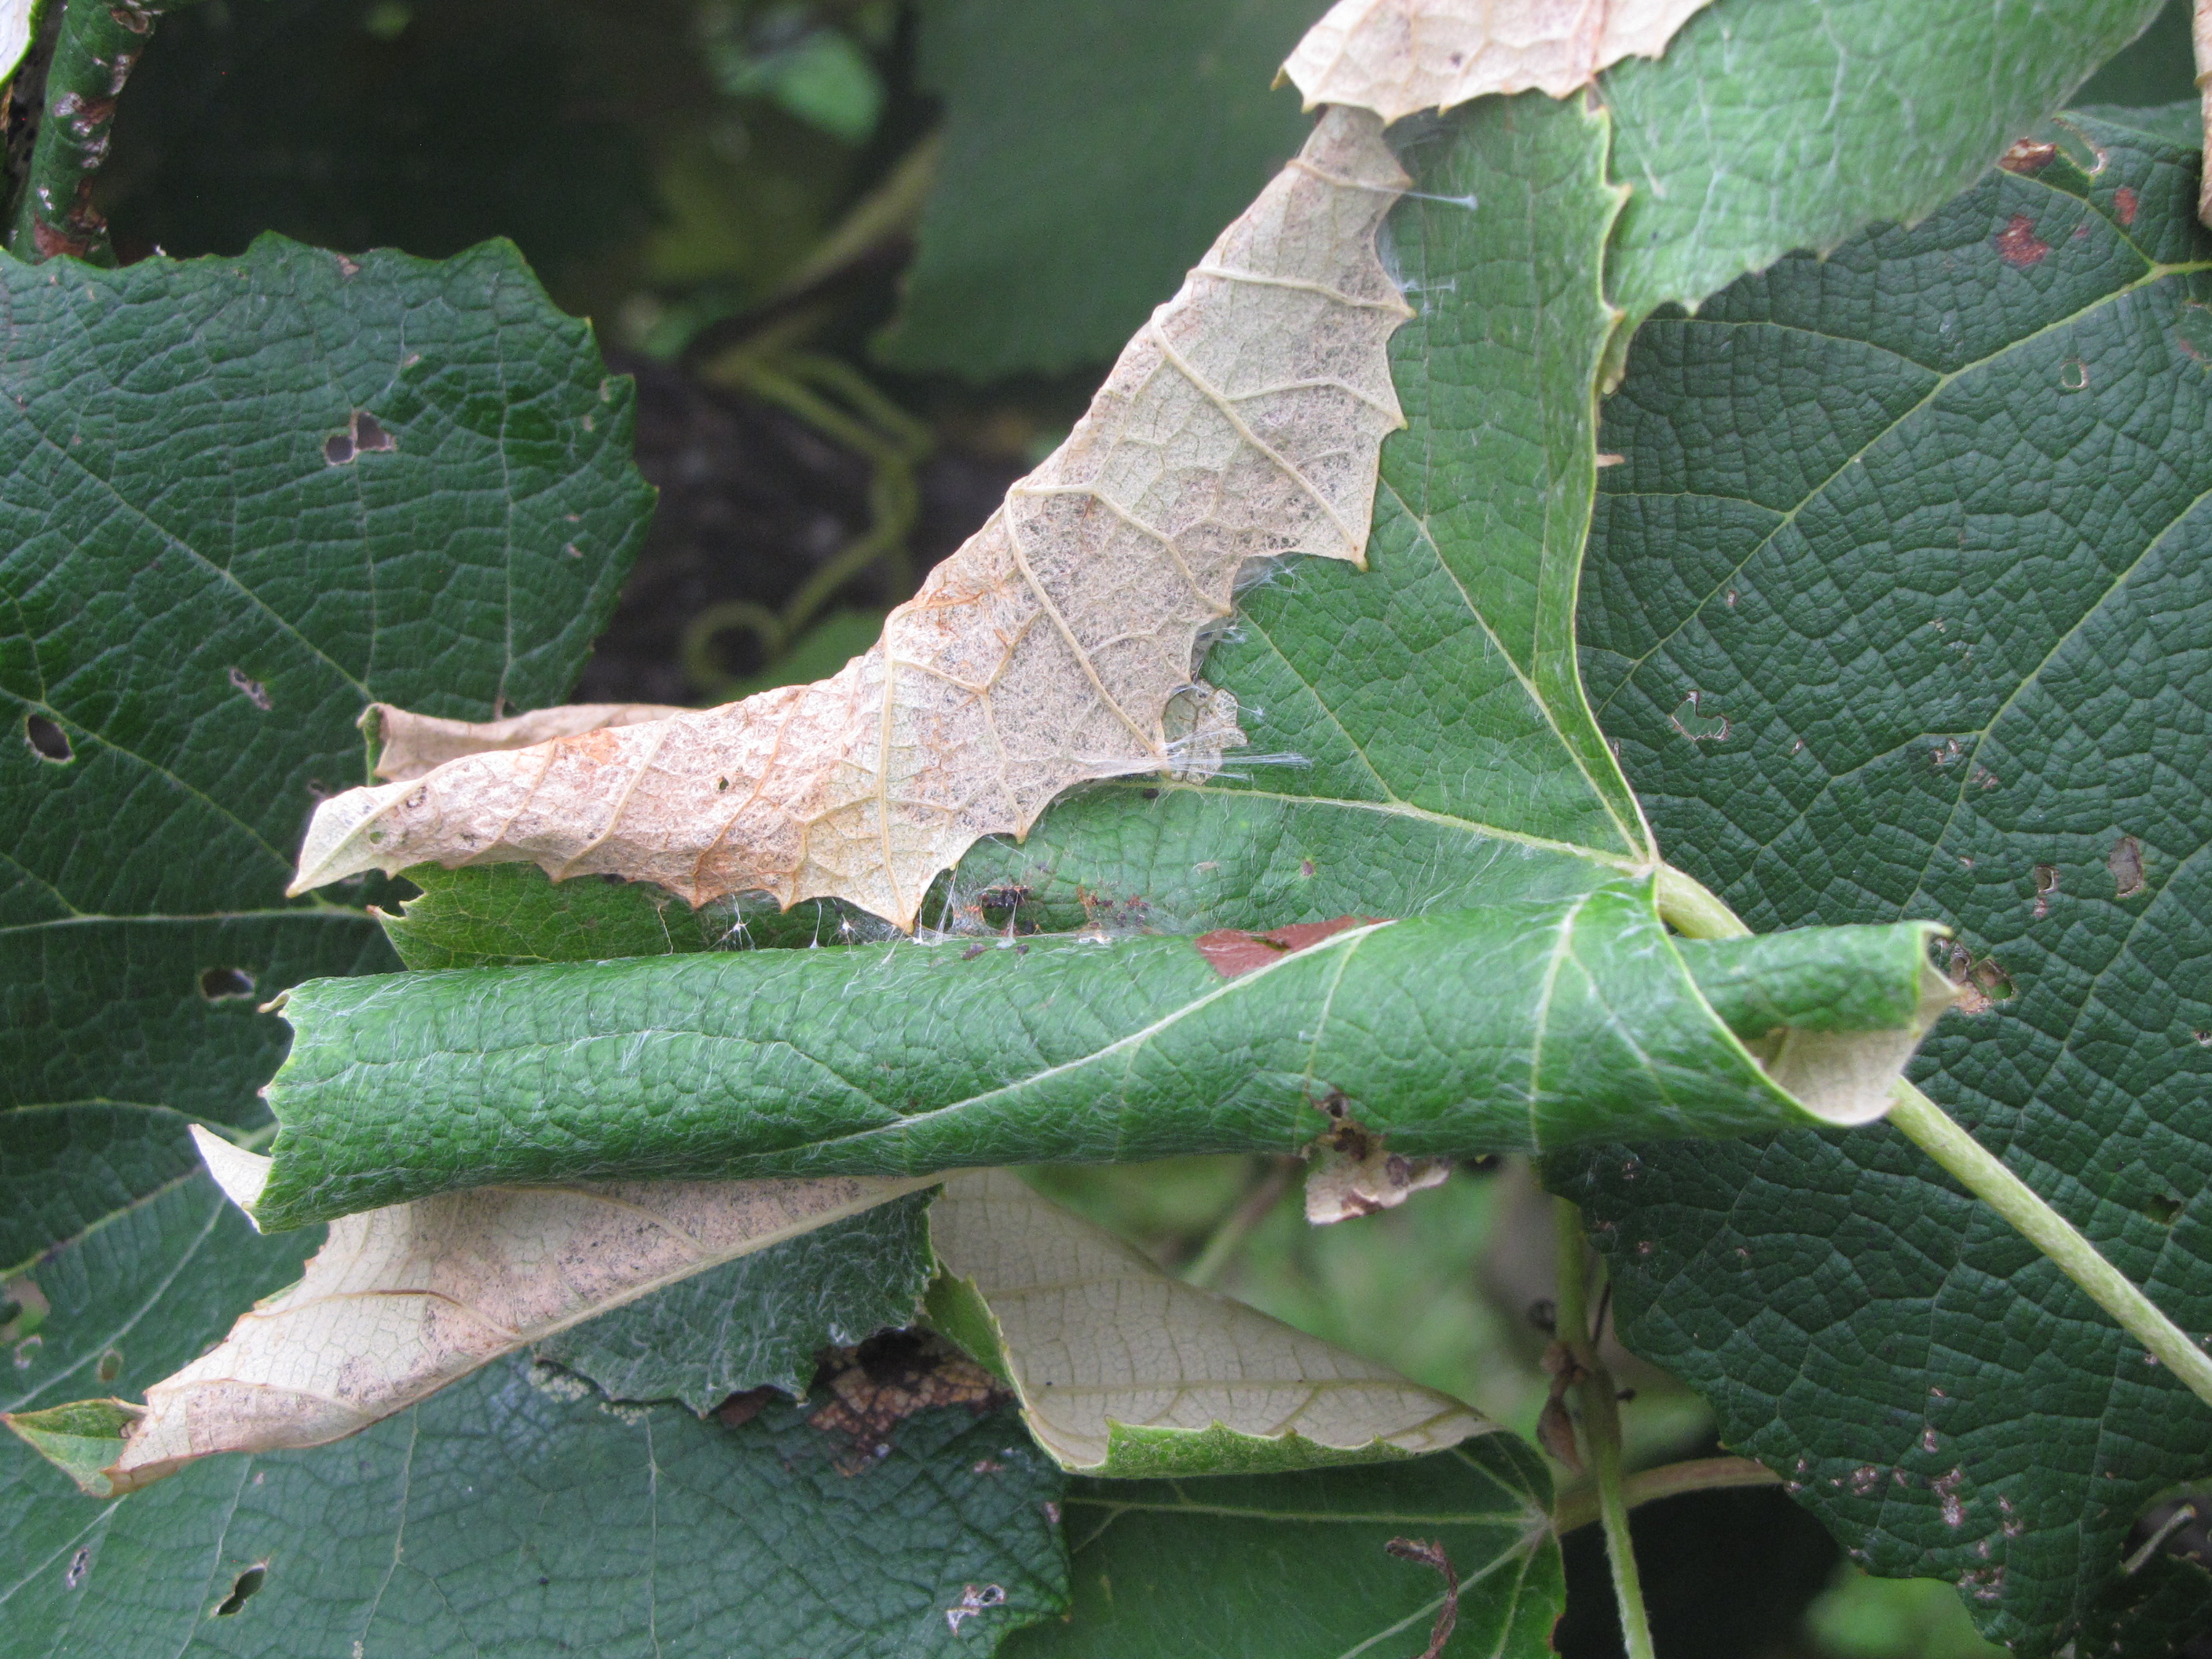 Leafroller leaf damage close-up. 